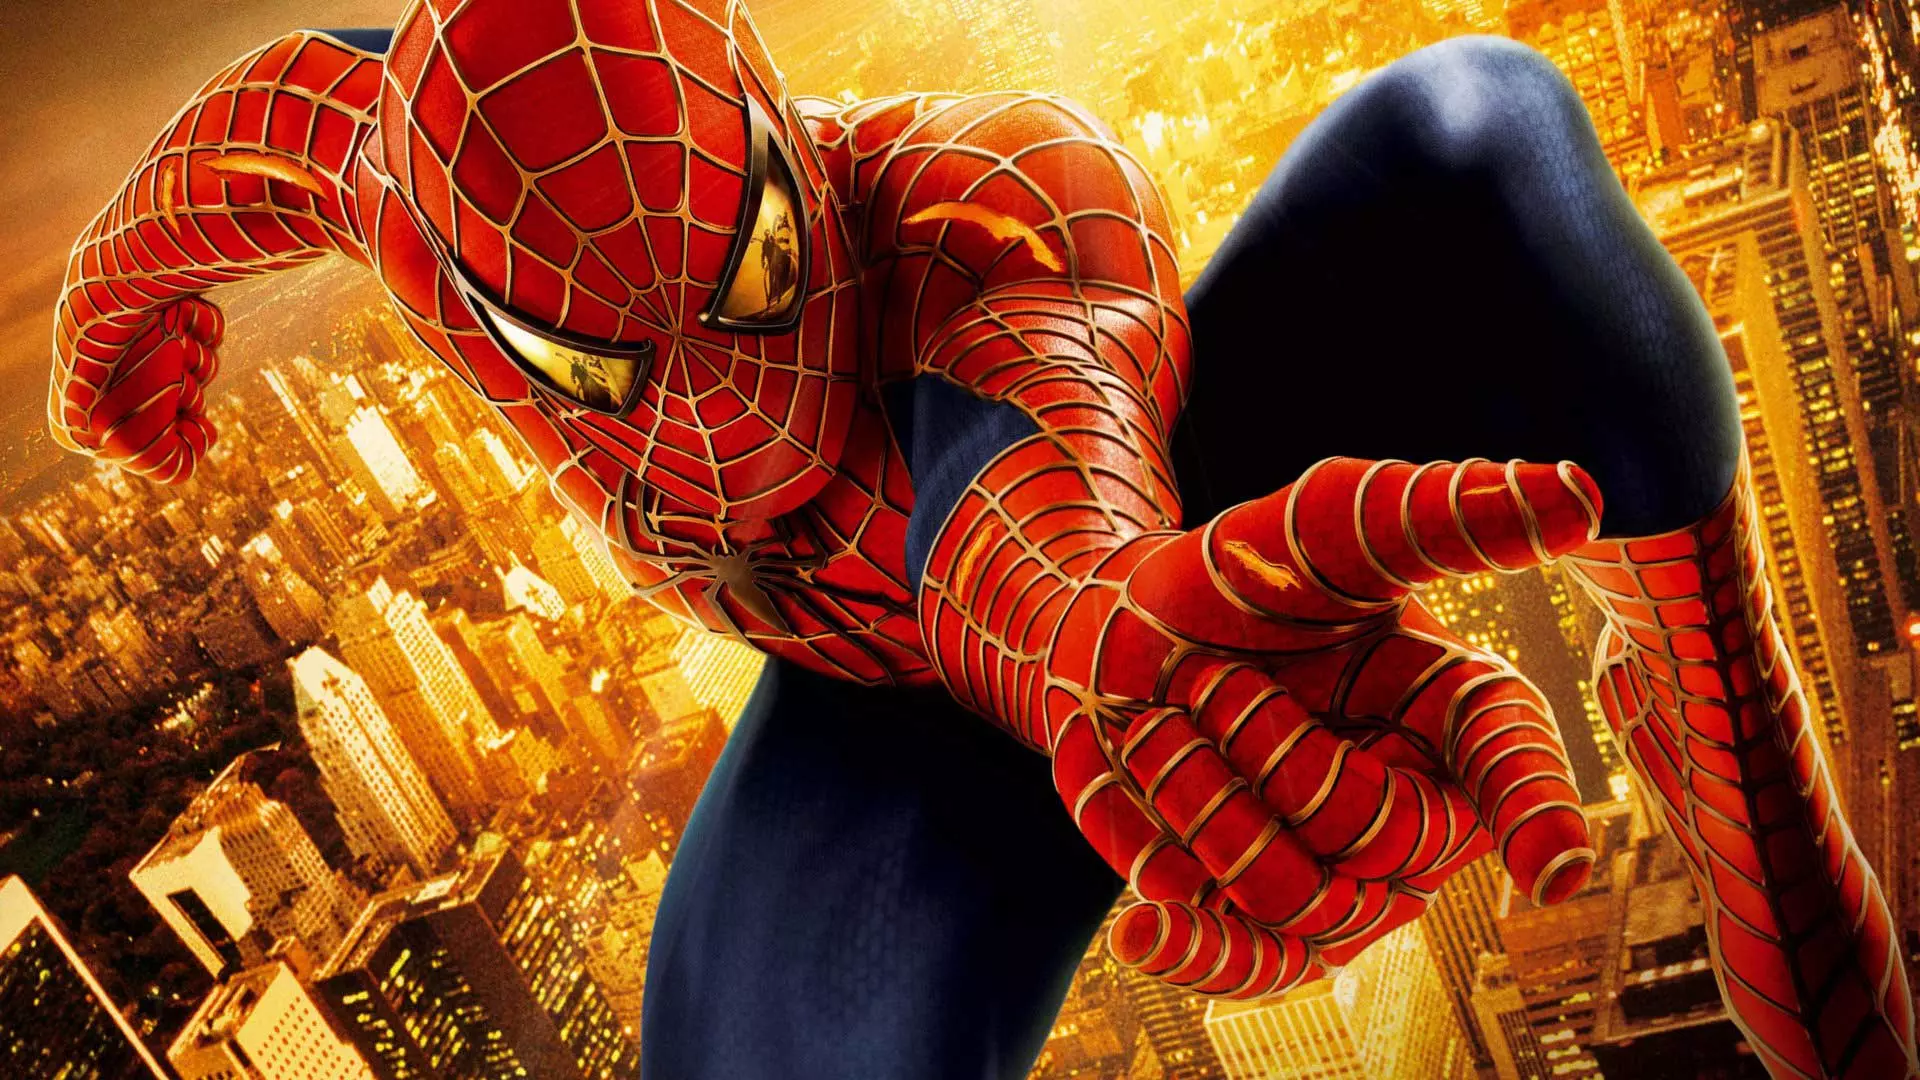 فیلم مرد عنکبوتی ۲ (فیلم اسپایدرمن ۲) با بازی توبی مگوایر، یکی از بهترین فیلم های ابرقهرمانی تاریخ سینما